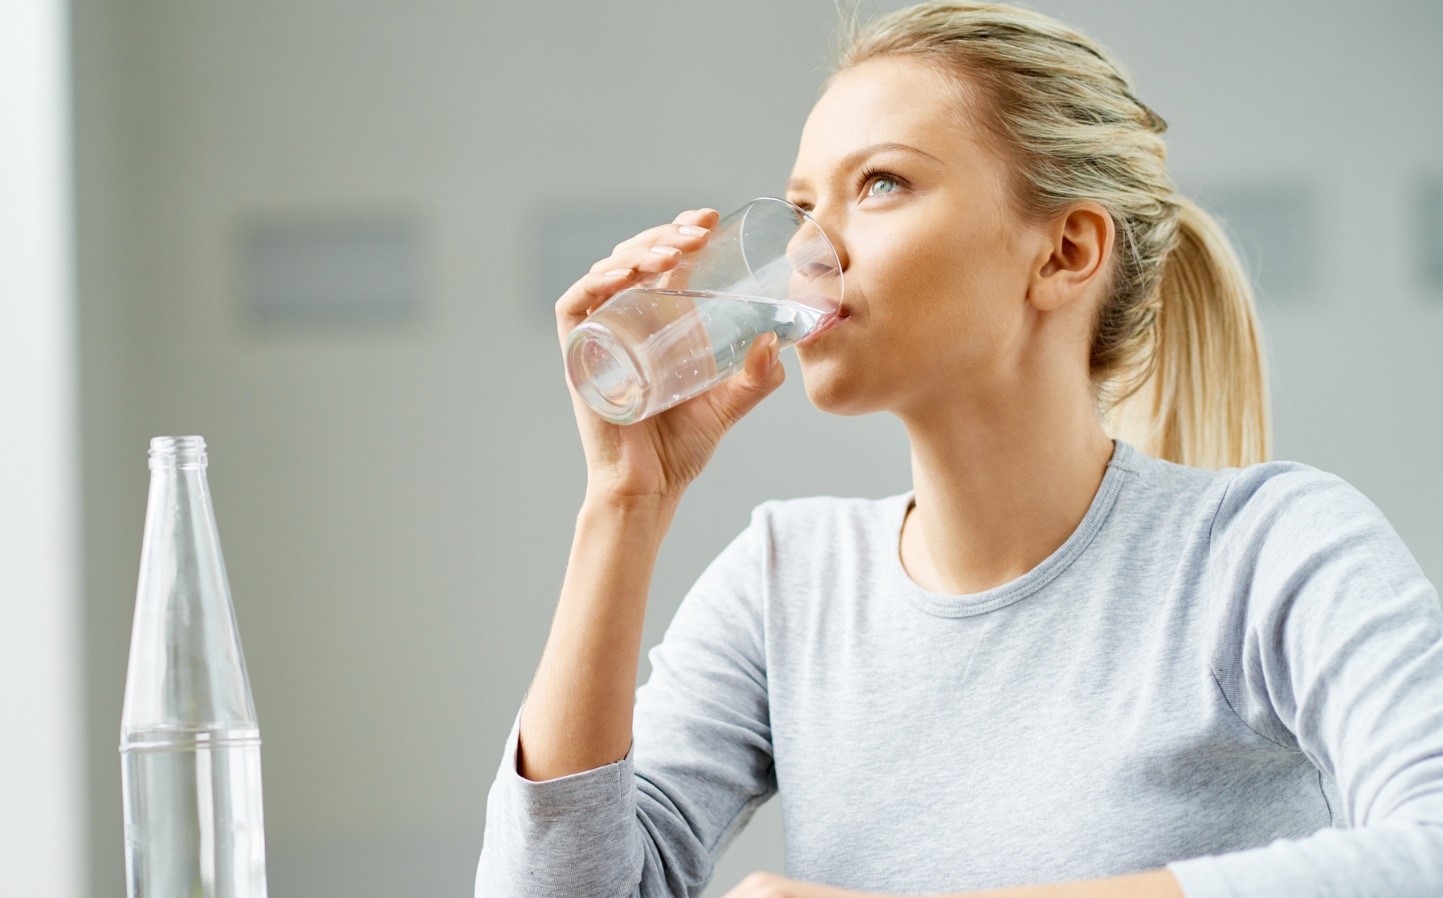 بلایی که نوشیدن آب بین غذا نصیب بدنتان می کند!